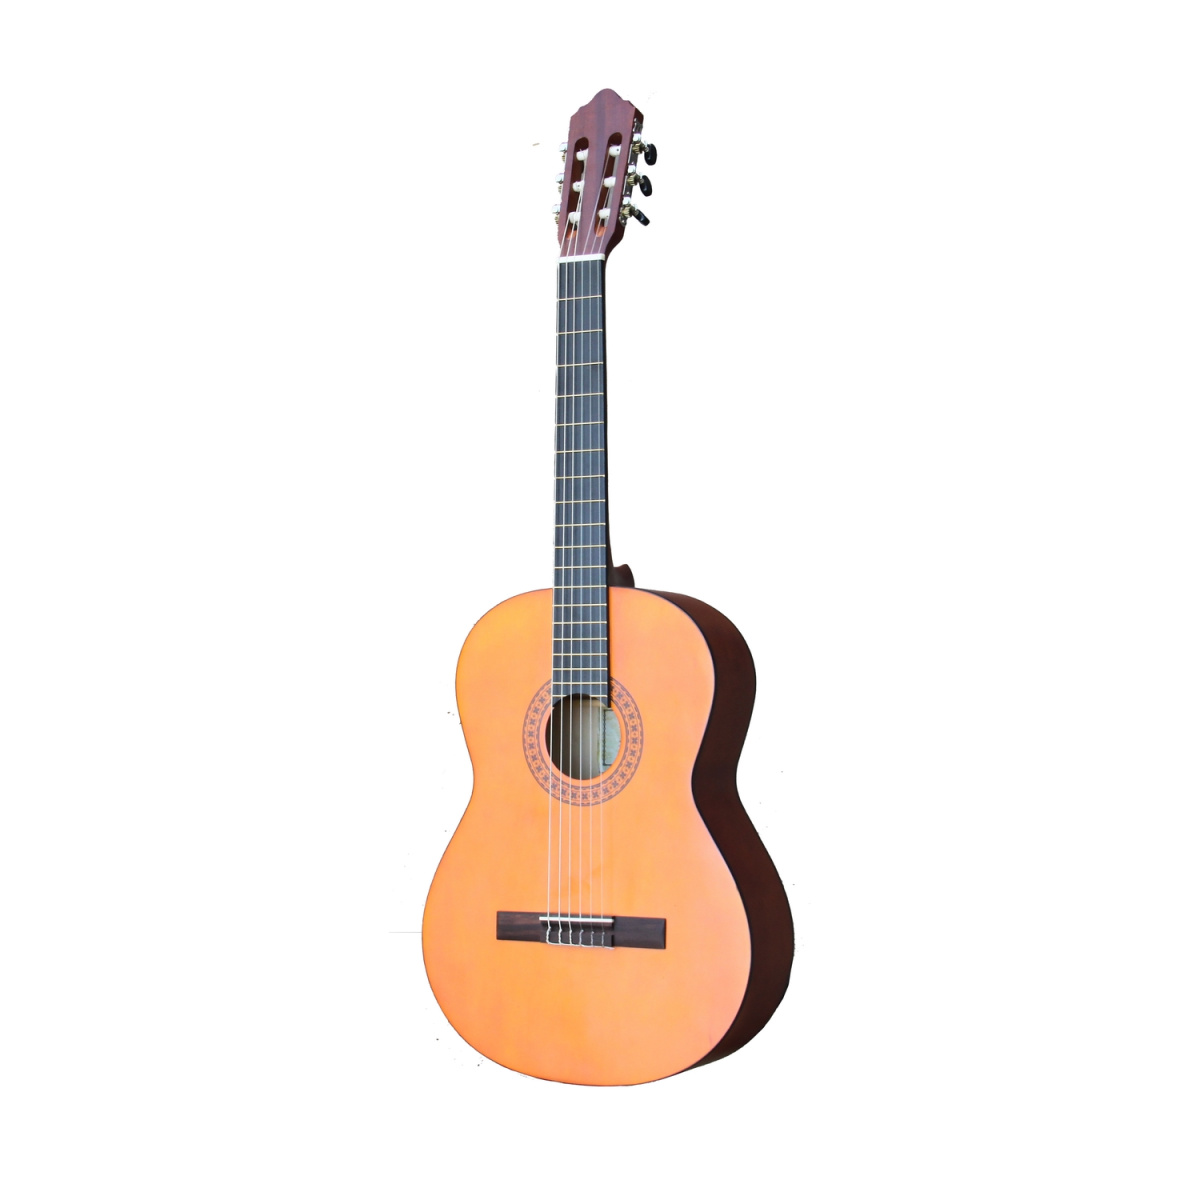 BARCELONA CG11 - Классическая гитара, 4/4, анкер, колки хром, цвет натурал, матовое покрытие. купить в prostore.me